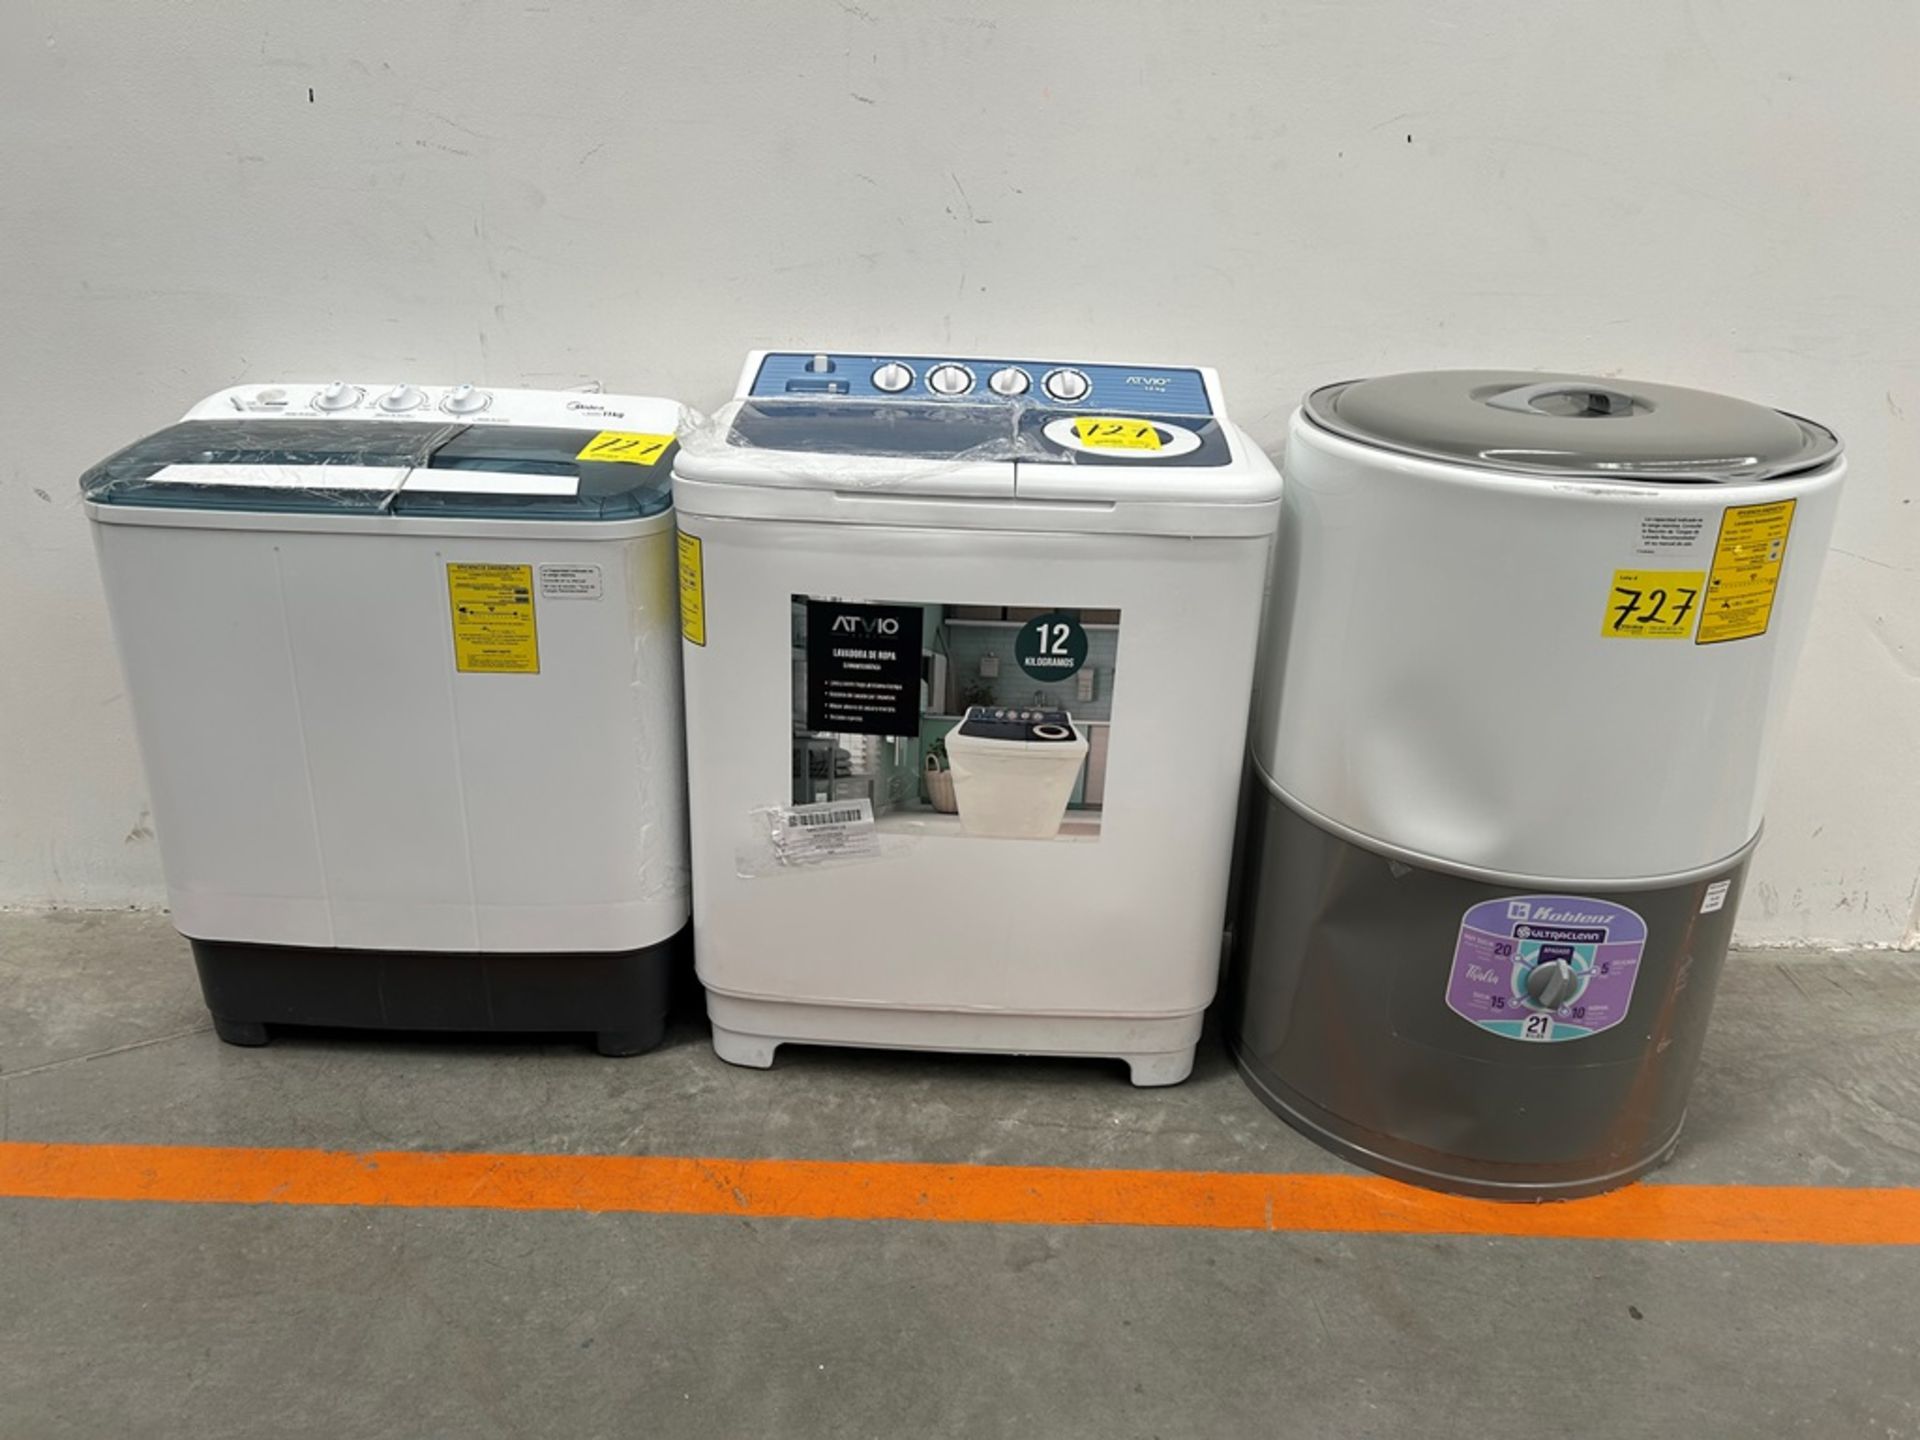 Lote de 3 lavadoras contiene: 1 Lavadora de 21 KG, Marca KOBLENZ, Modelo LRKF21P, Serie 31522, Colo